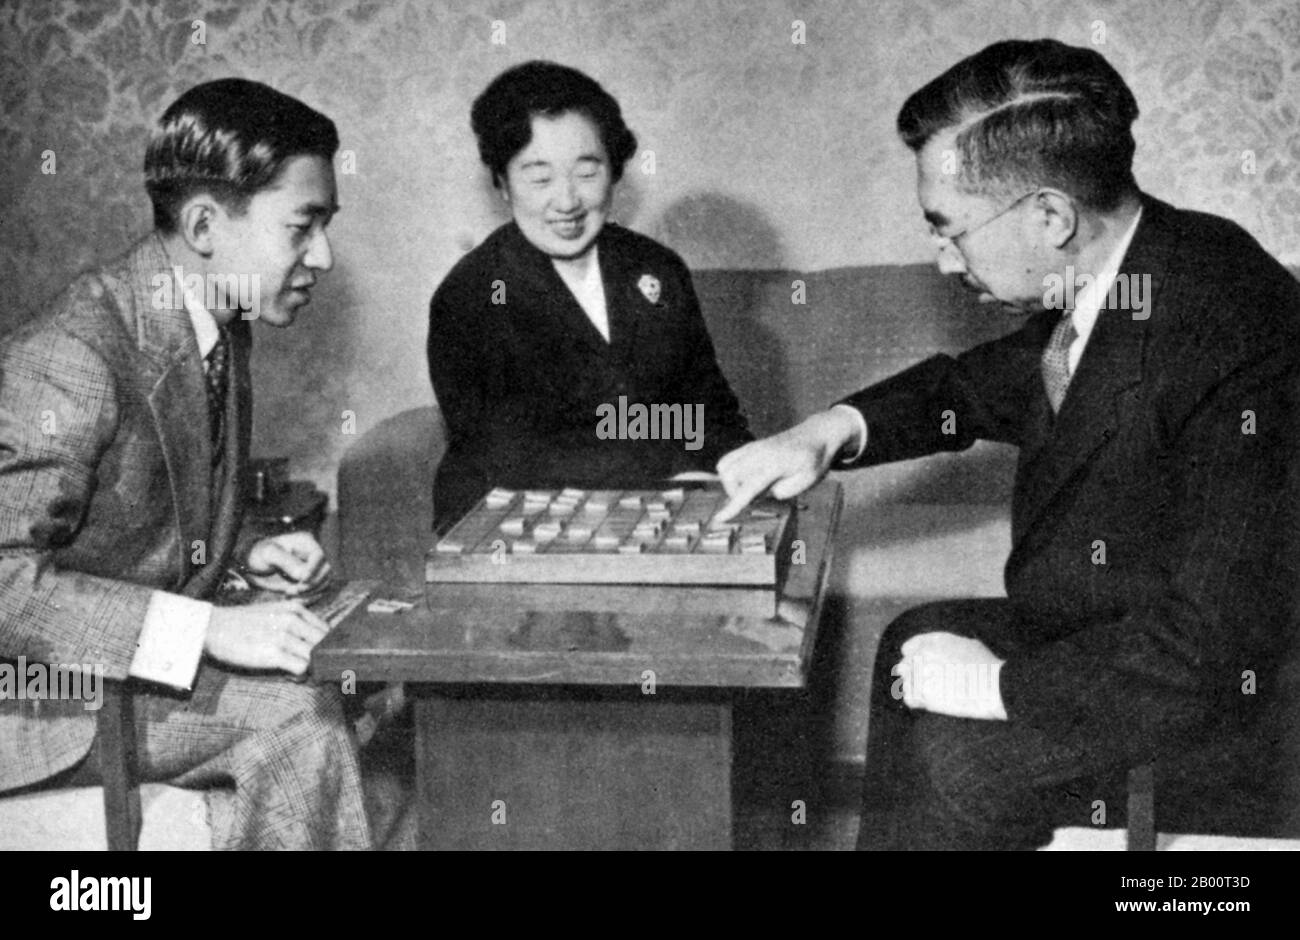 Japon : la famille impériale joue à un jeu de société. Photo informelle de la famille impériale jouant à un jeu de société (années 1950). Le prince héritier Akihito à gauche, l'impératrice Kojun centre, l'empereur Hirohito à droite. Hirohito, l'empereur Shōwa (29 avril 1901 – 7 janvier 1989), était le 124ème empereur du Japon selon l'ordre traditionnel, régnant du 25 décembre 1926 jusqu'à sa mort en 1989. Bien que mieux connu en dehors du Japon par son nom personnel Hirohito, au Japon il est maintenant mentionné exclusivement par son nom posthume Empereur Shōwa. Banque D'Images